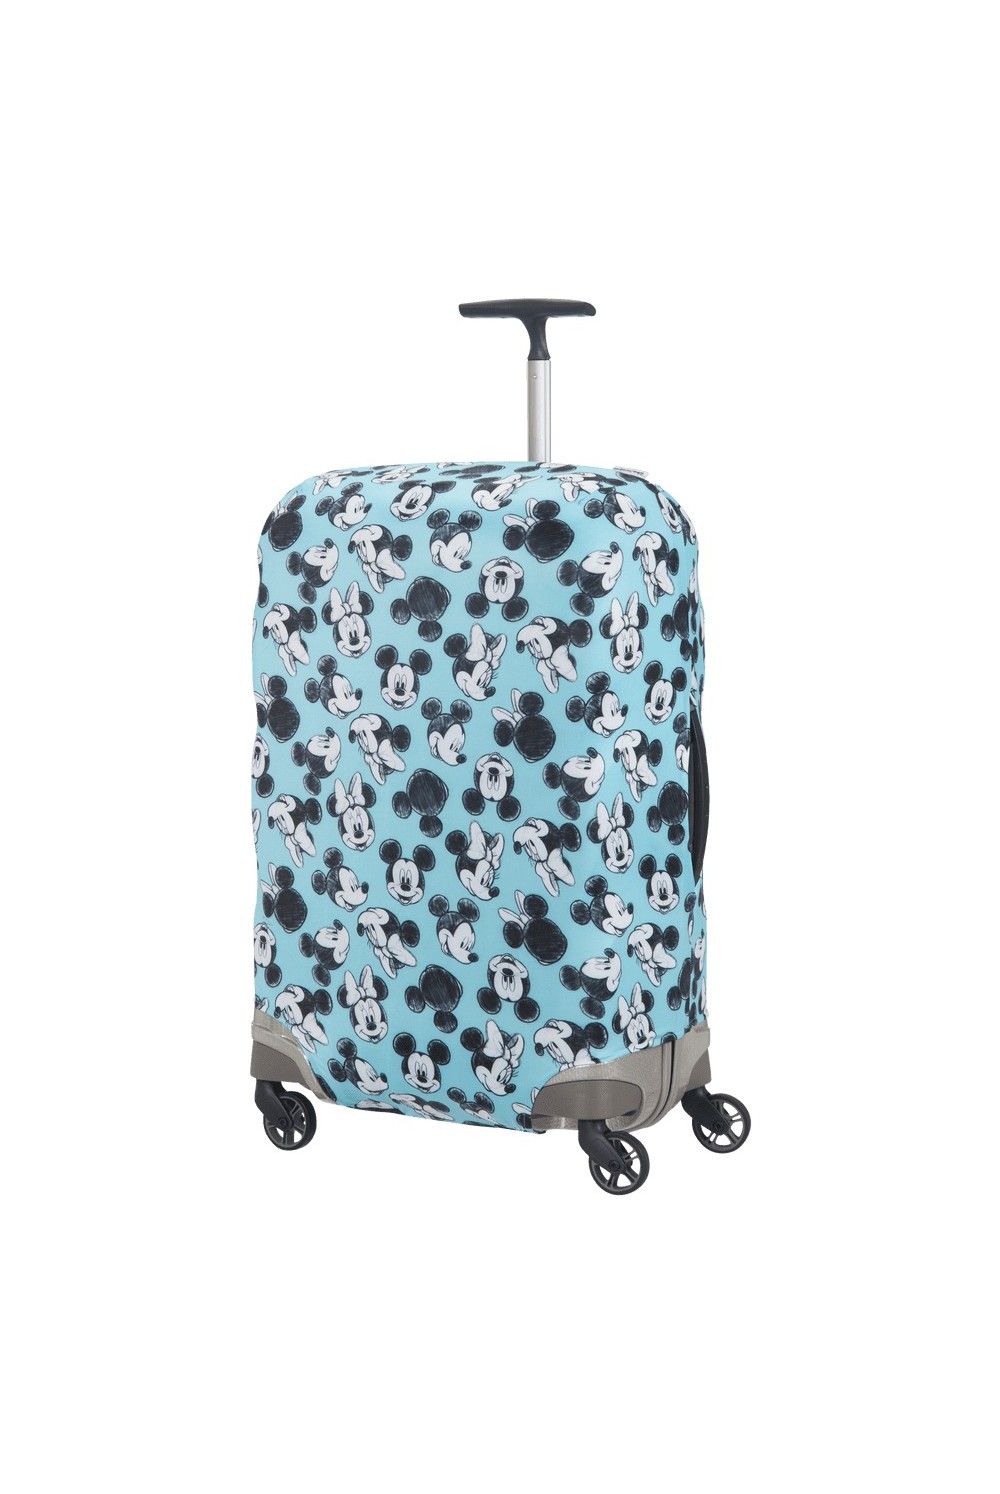 Samsonite Valise Cover Disney M pour les valises de taille moyenne